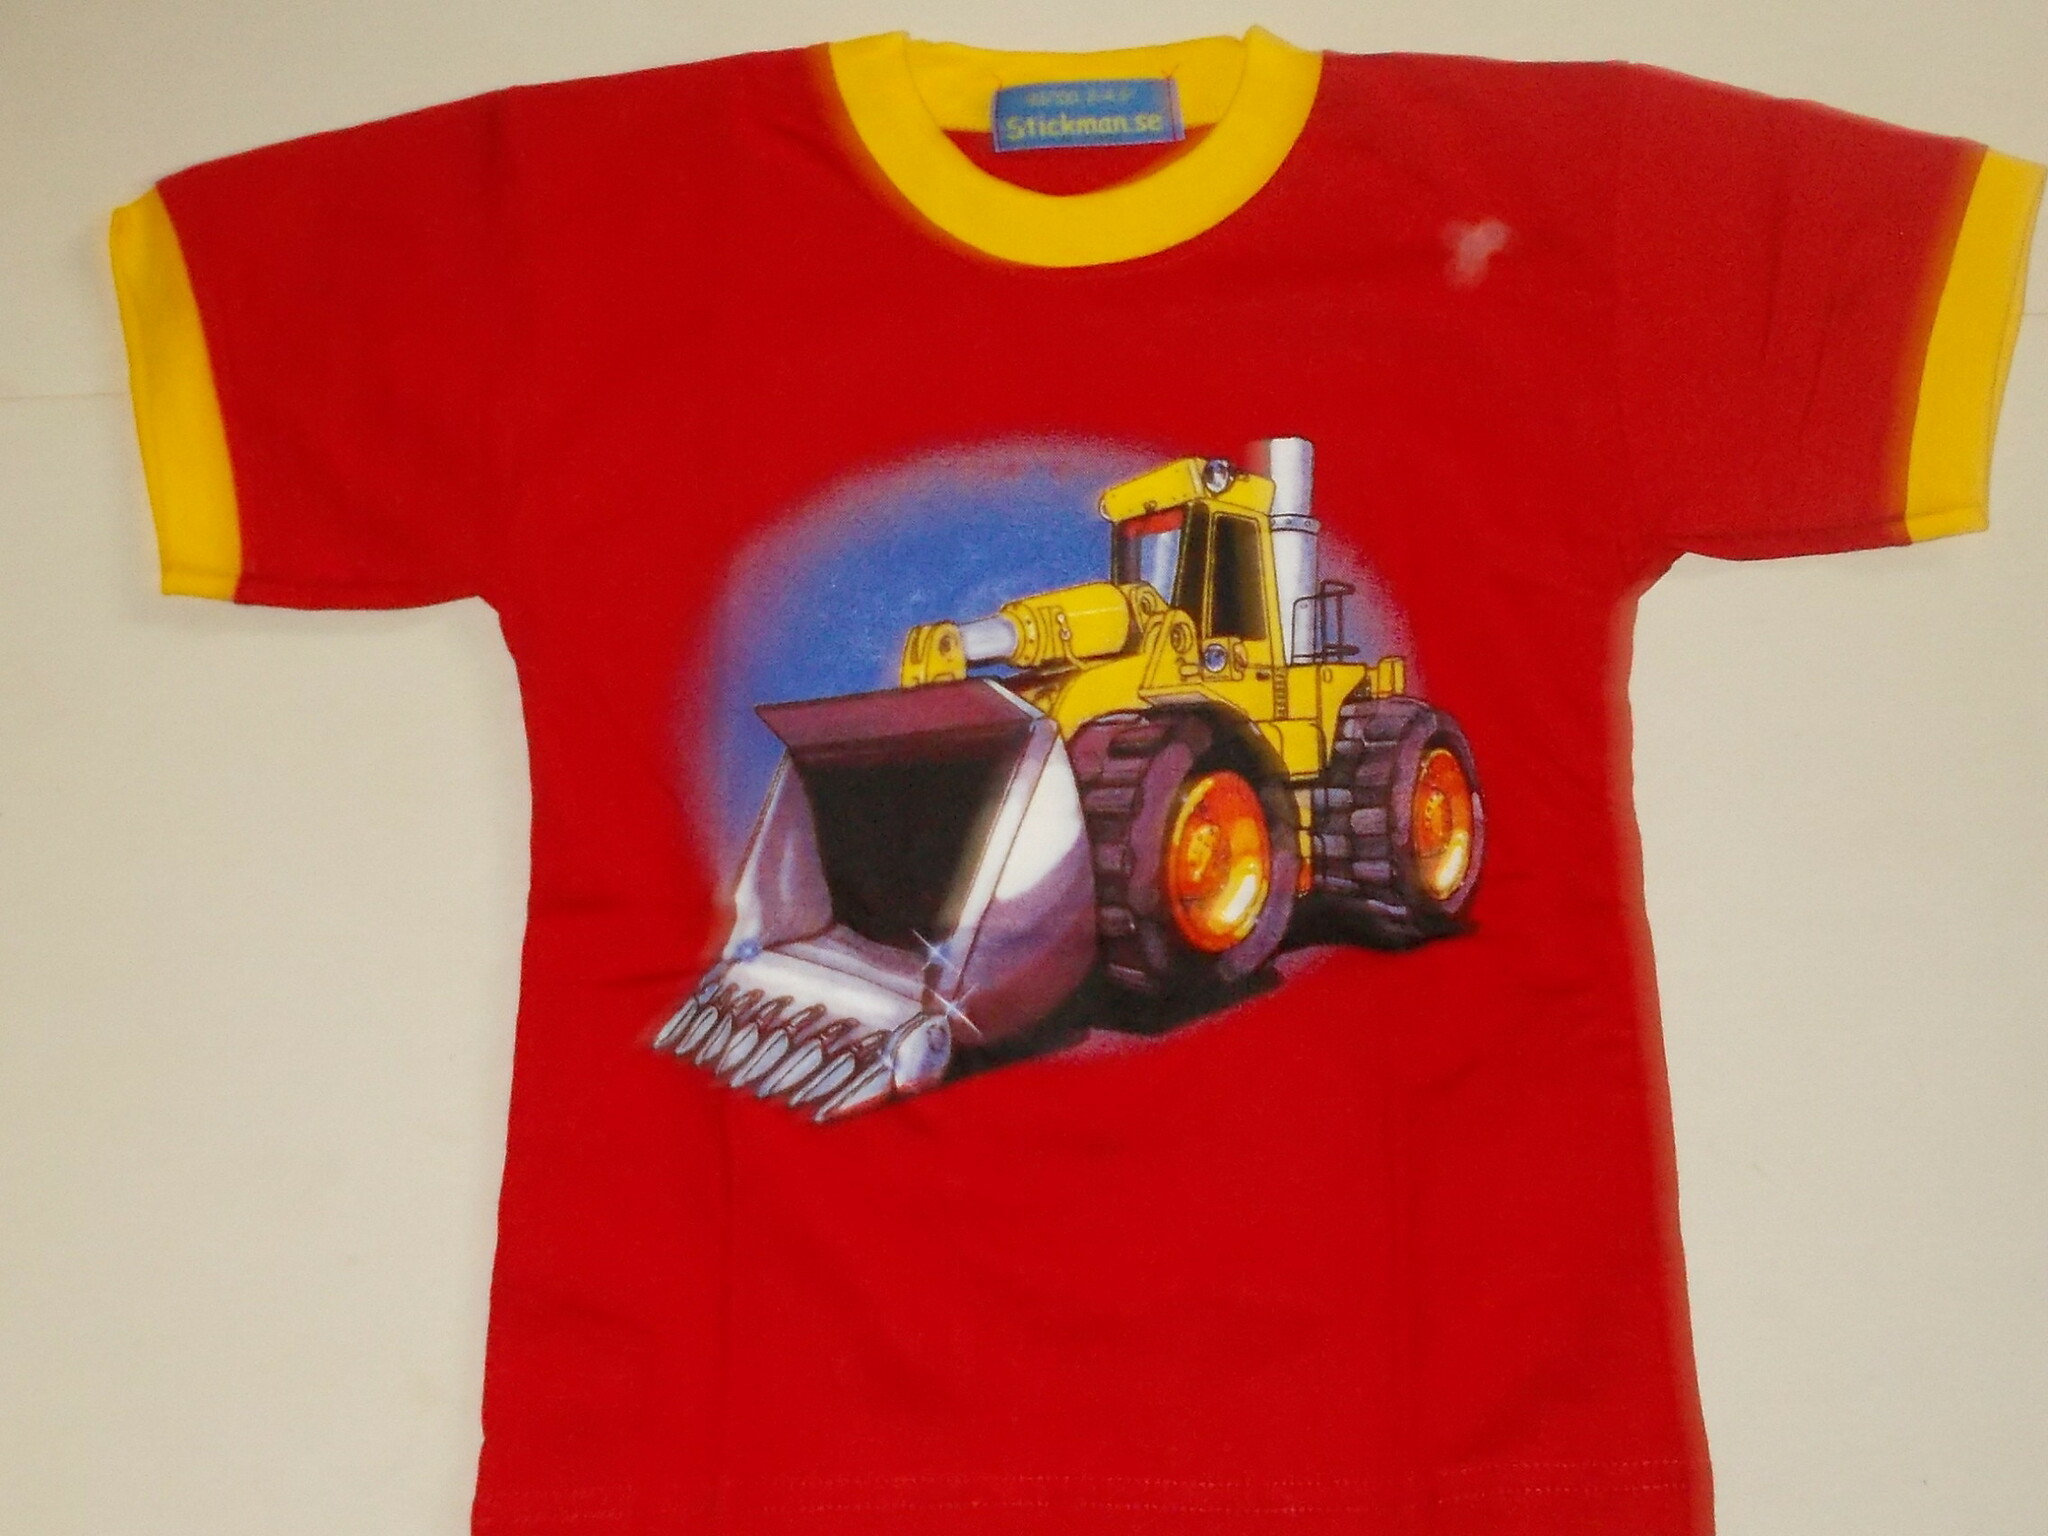 Traktor T-shirt 1-2 år